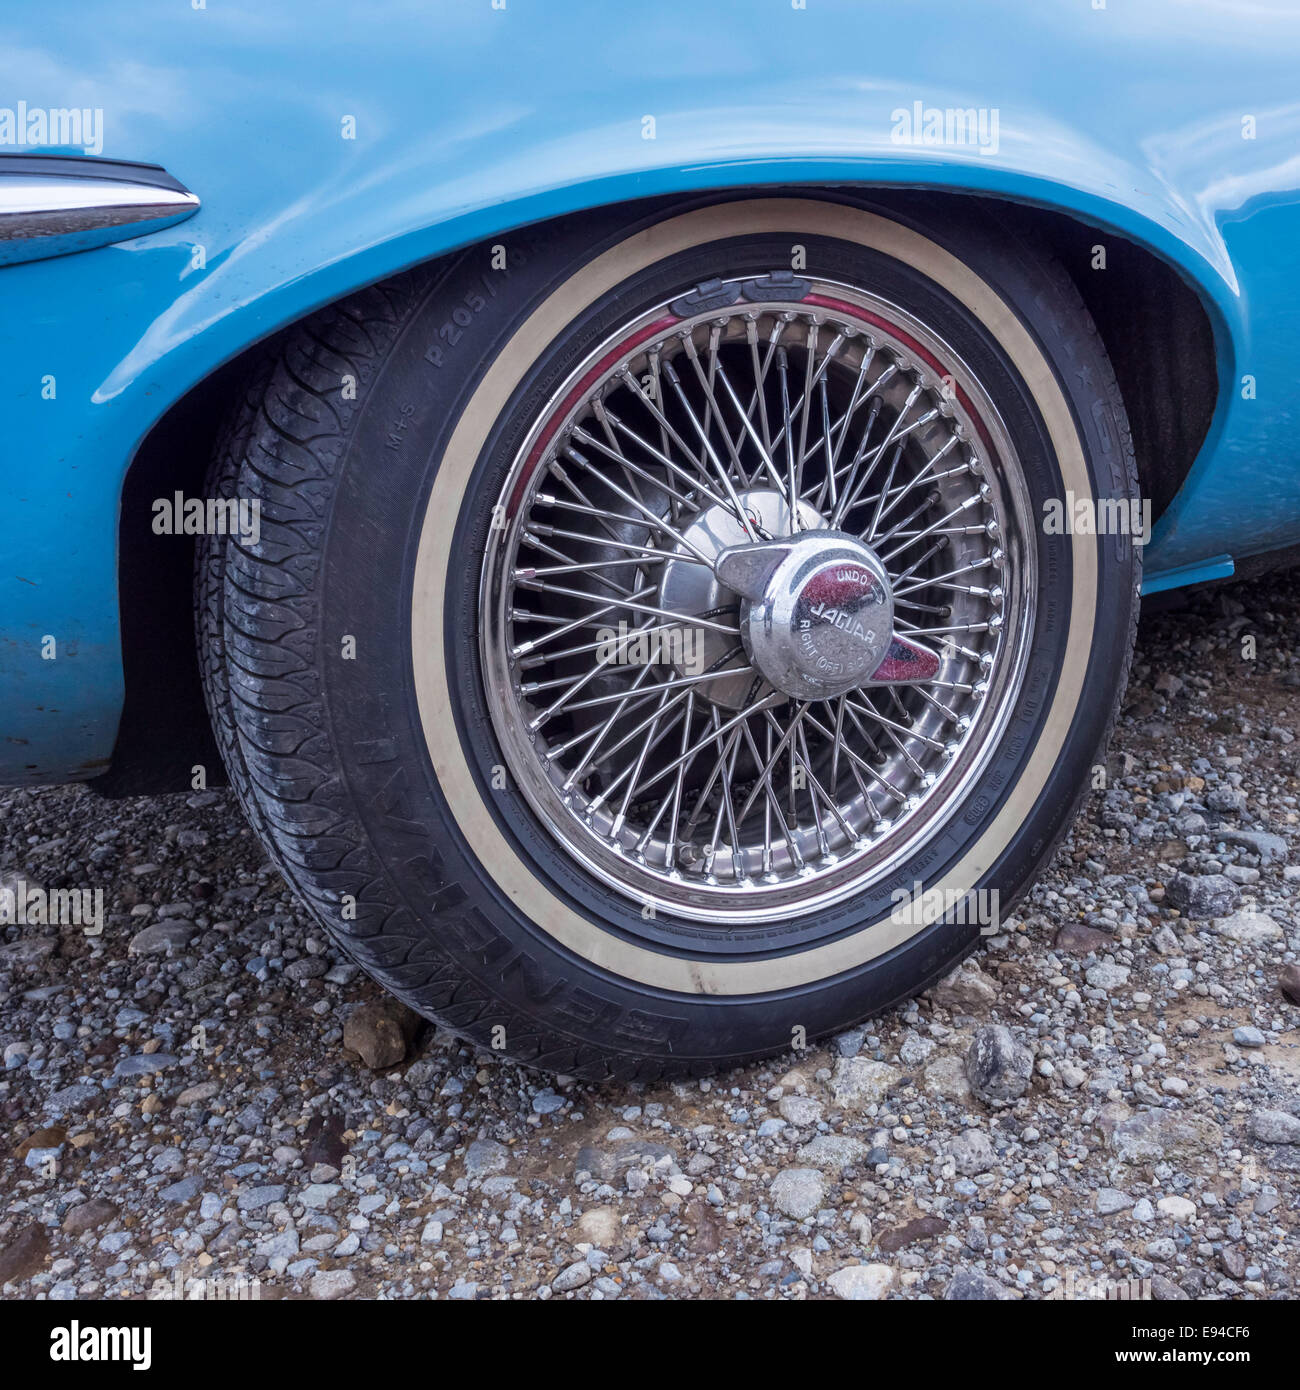 Offside wire spoke rear  wheel with knock-off hub cap blue 1971/72 Jaguar E-type roadster motor car Stock Photo